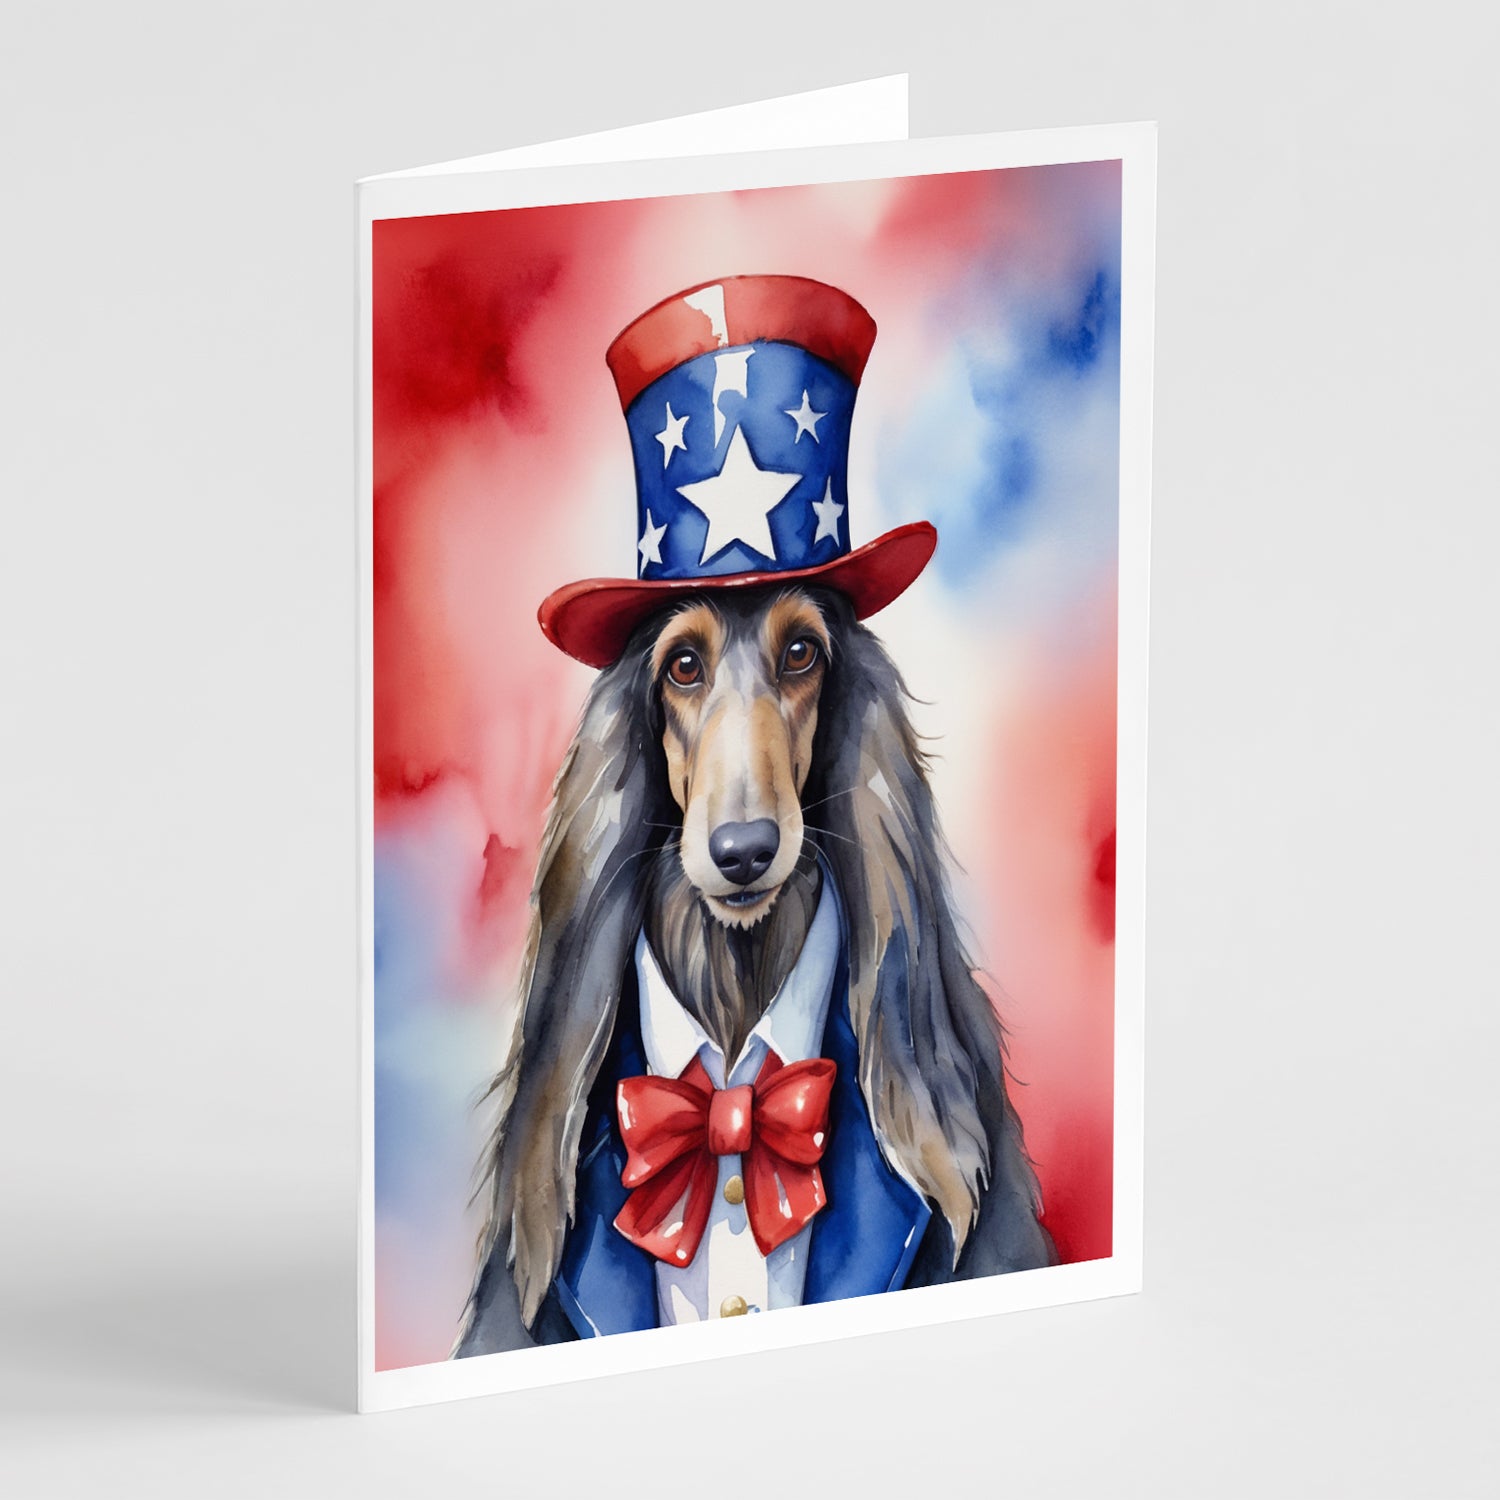 Buy this Afghan Hound Patriotic American Greeting Cards Pack of 8